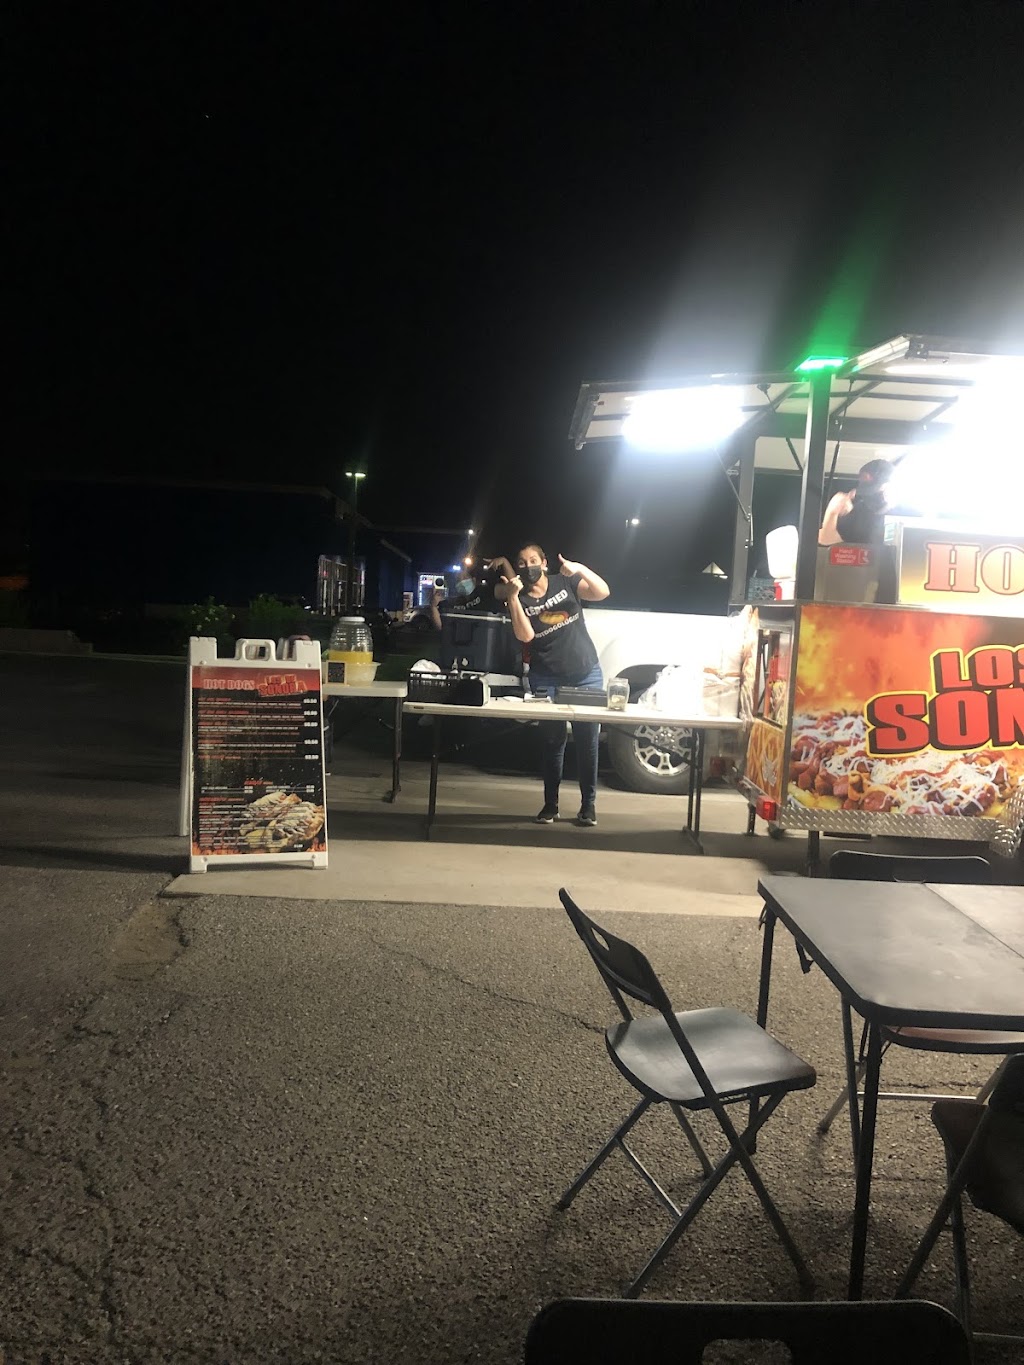 Hot Dogs Los De Sonora | Bill Gentry park, 14010 N El Mirage Rd, El Mirage, AZ 85335, USA | Phone: (623) 344-9465